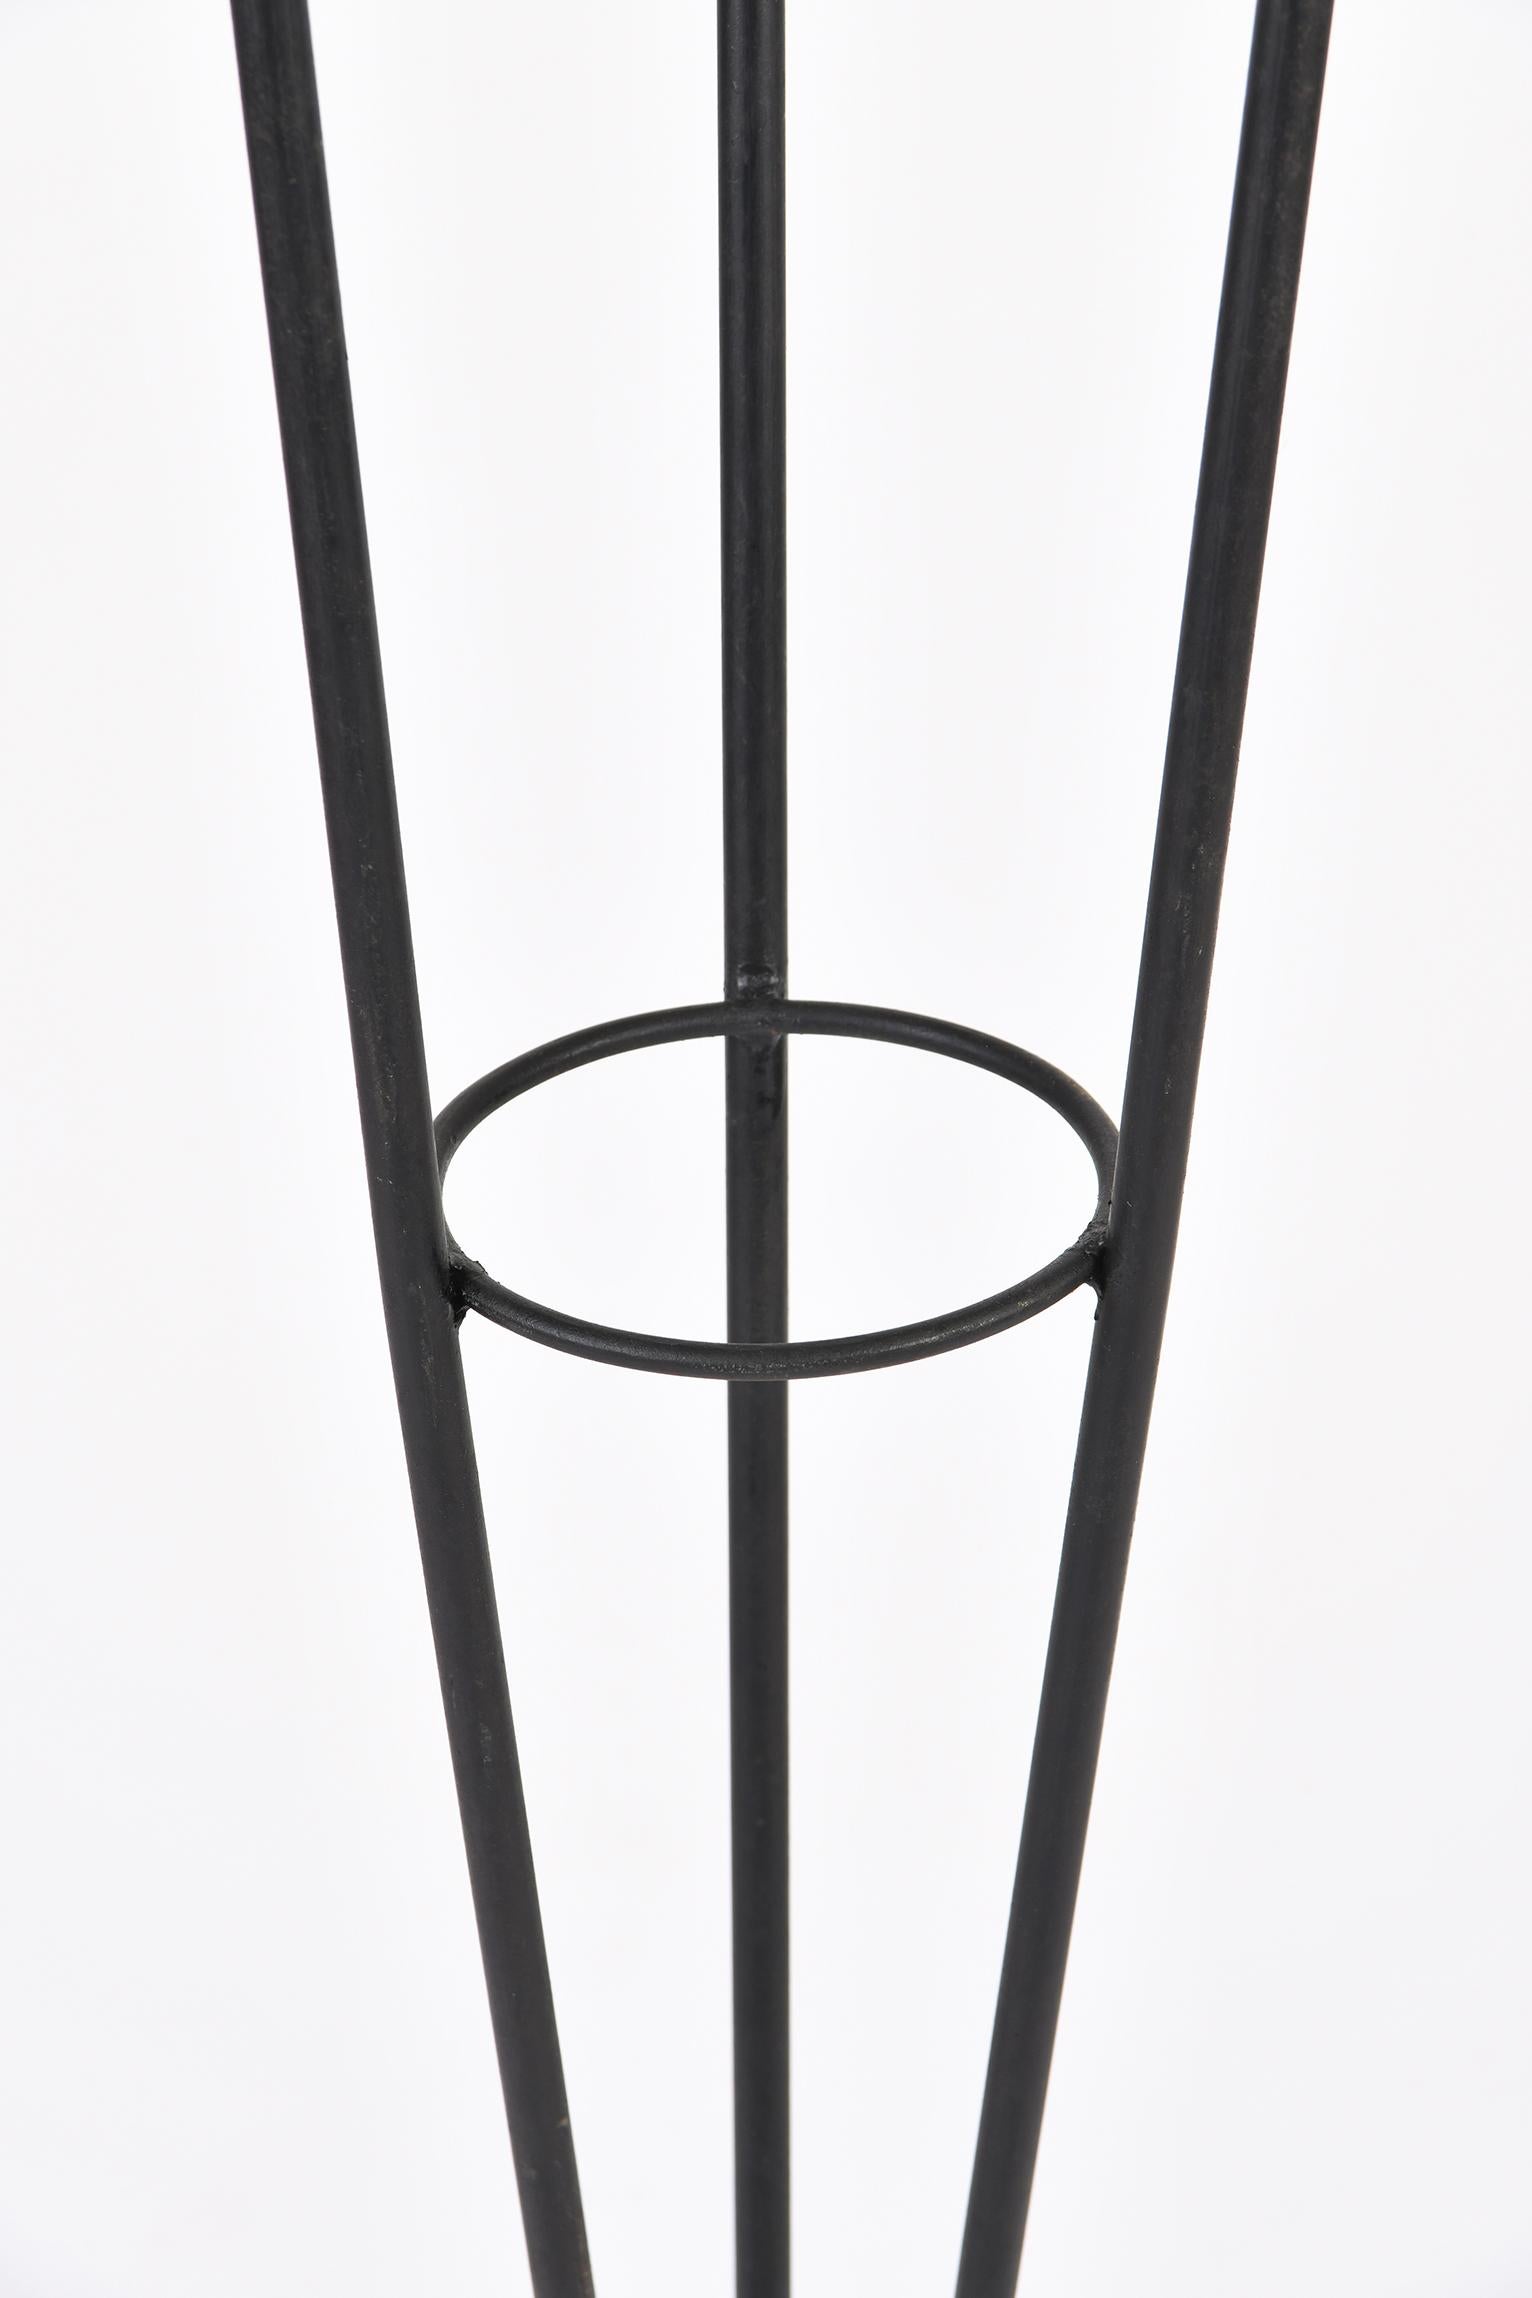 Enameled French 1950s Triple Light Black and Brass Floor Lamp